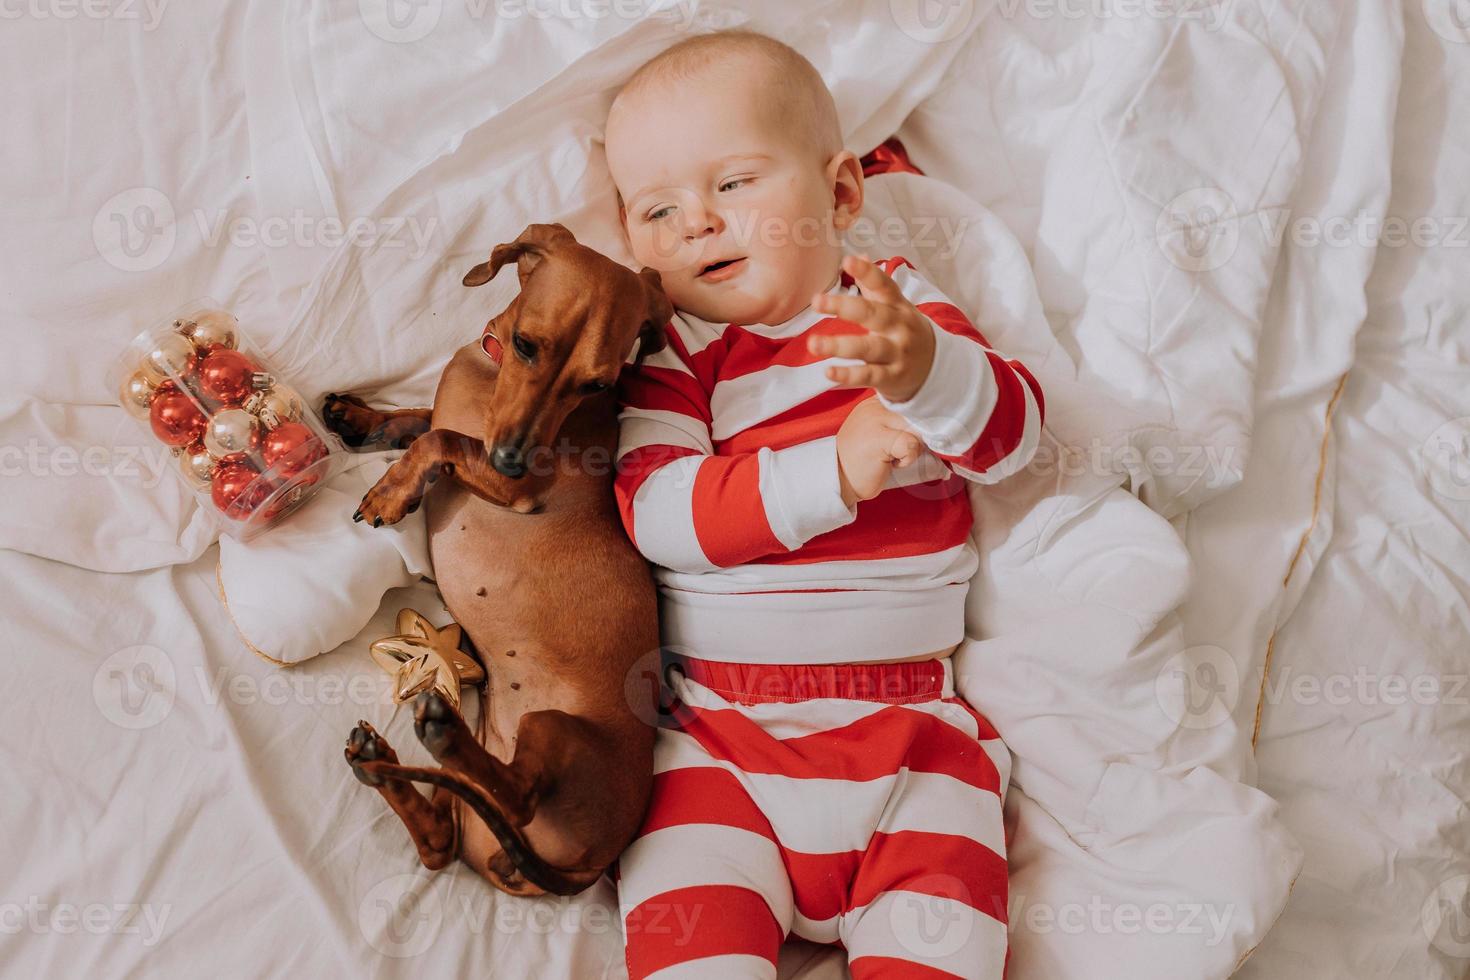 petit garçon en pyjama rouge et blanc est allongé dans son lit sur un drap blanc avec un chien. Matin de noël. sommeil sain de l'enfant. espace pour le texte. photo de haute qualité